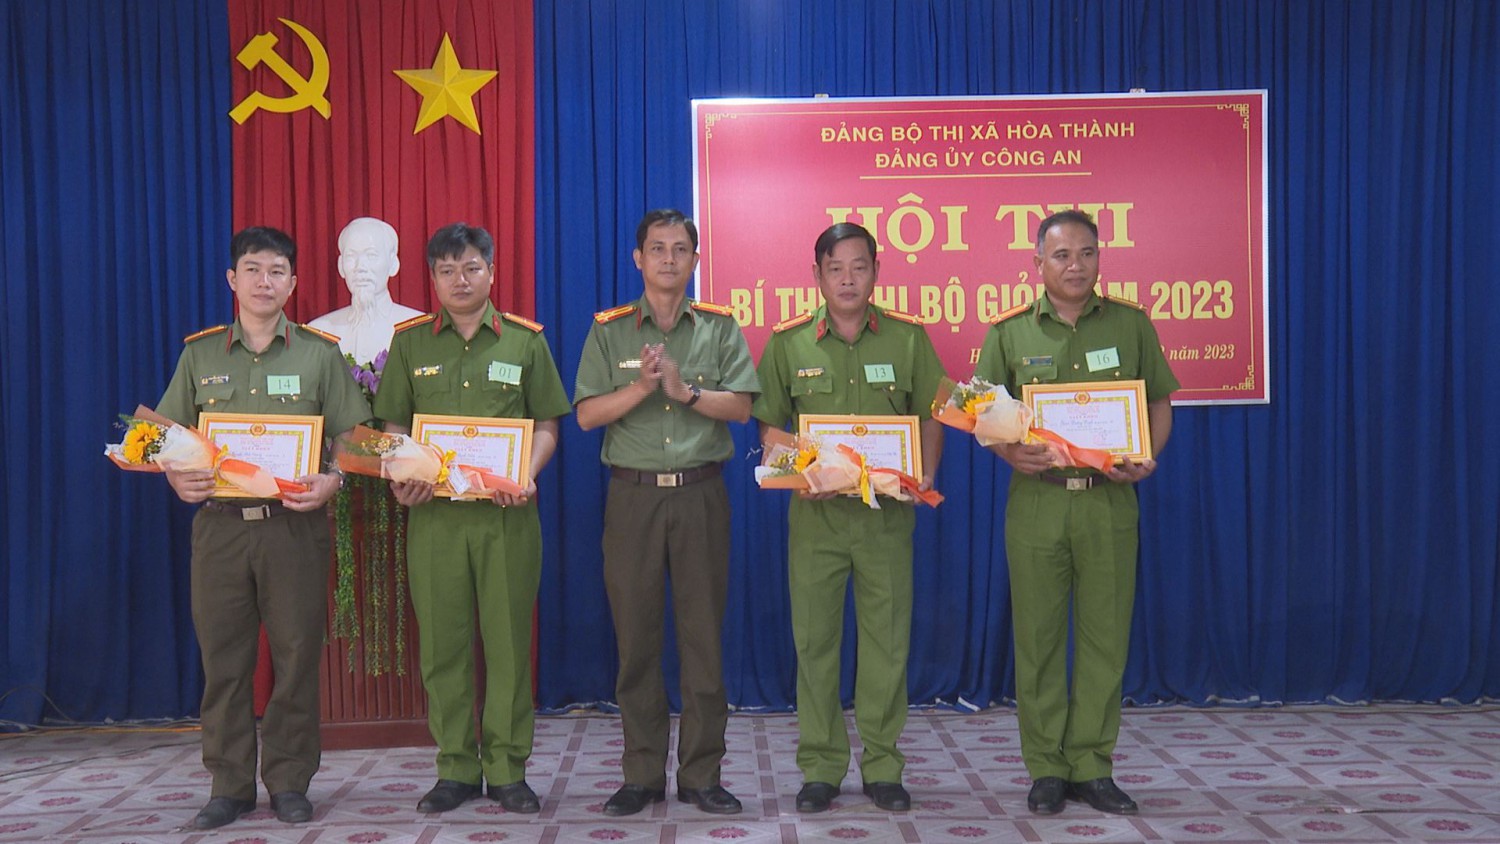 Thượng tá Nguyễn Minh Sang - Phó Bí thư Đảng uỷ Công an thị xã Hoà Thành trao các giải cho thí sinh đạt giải